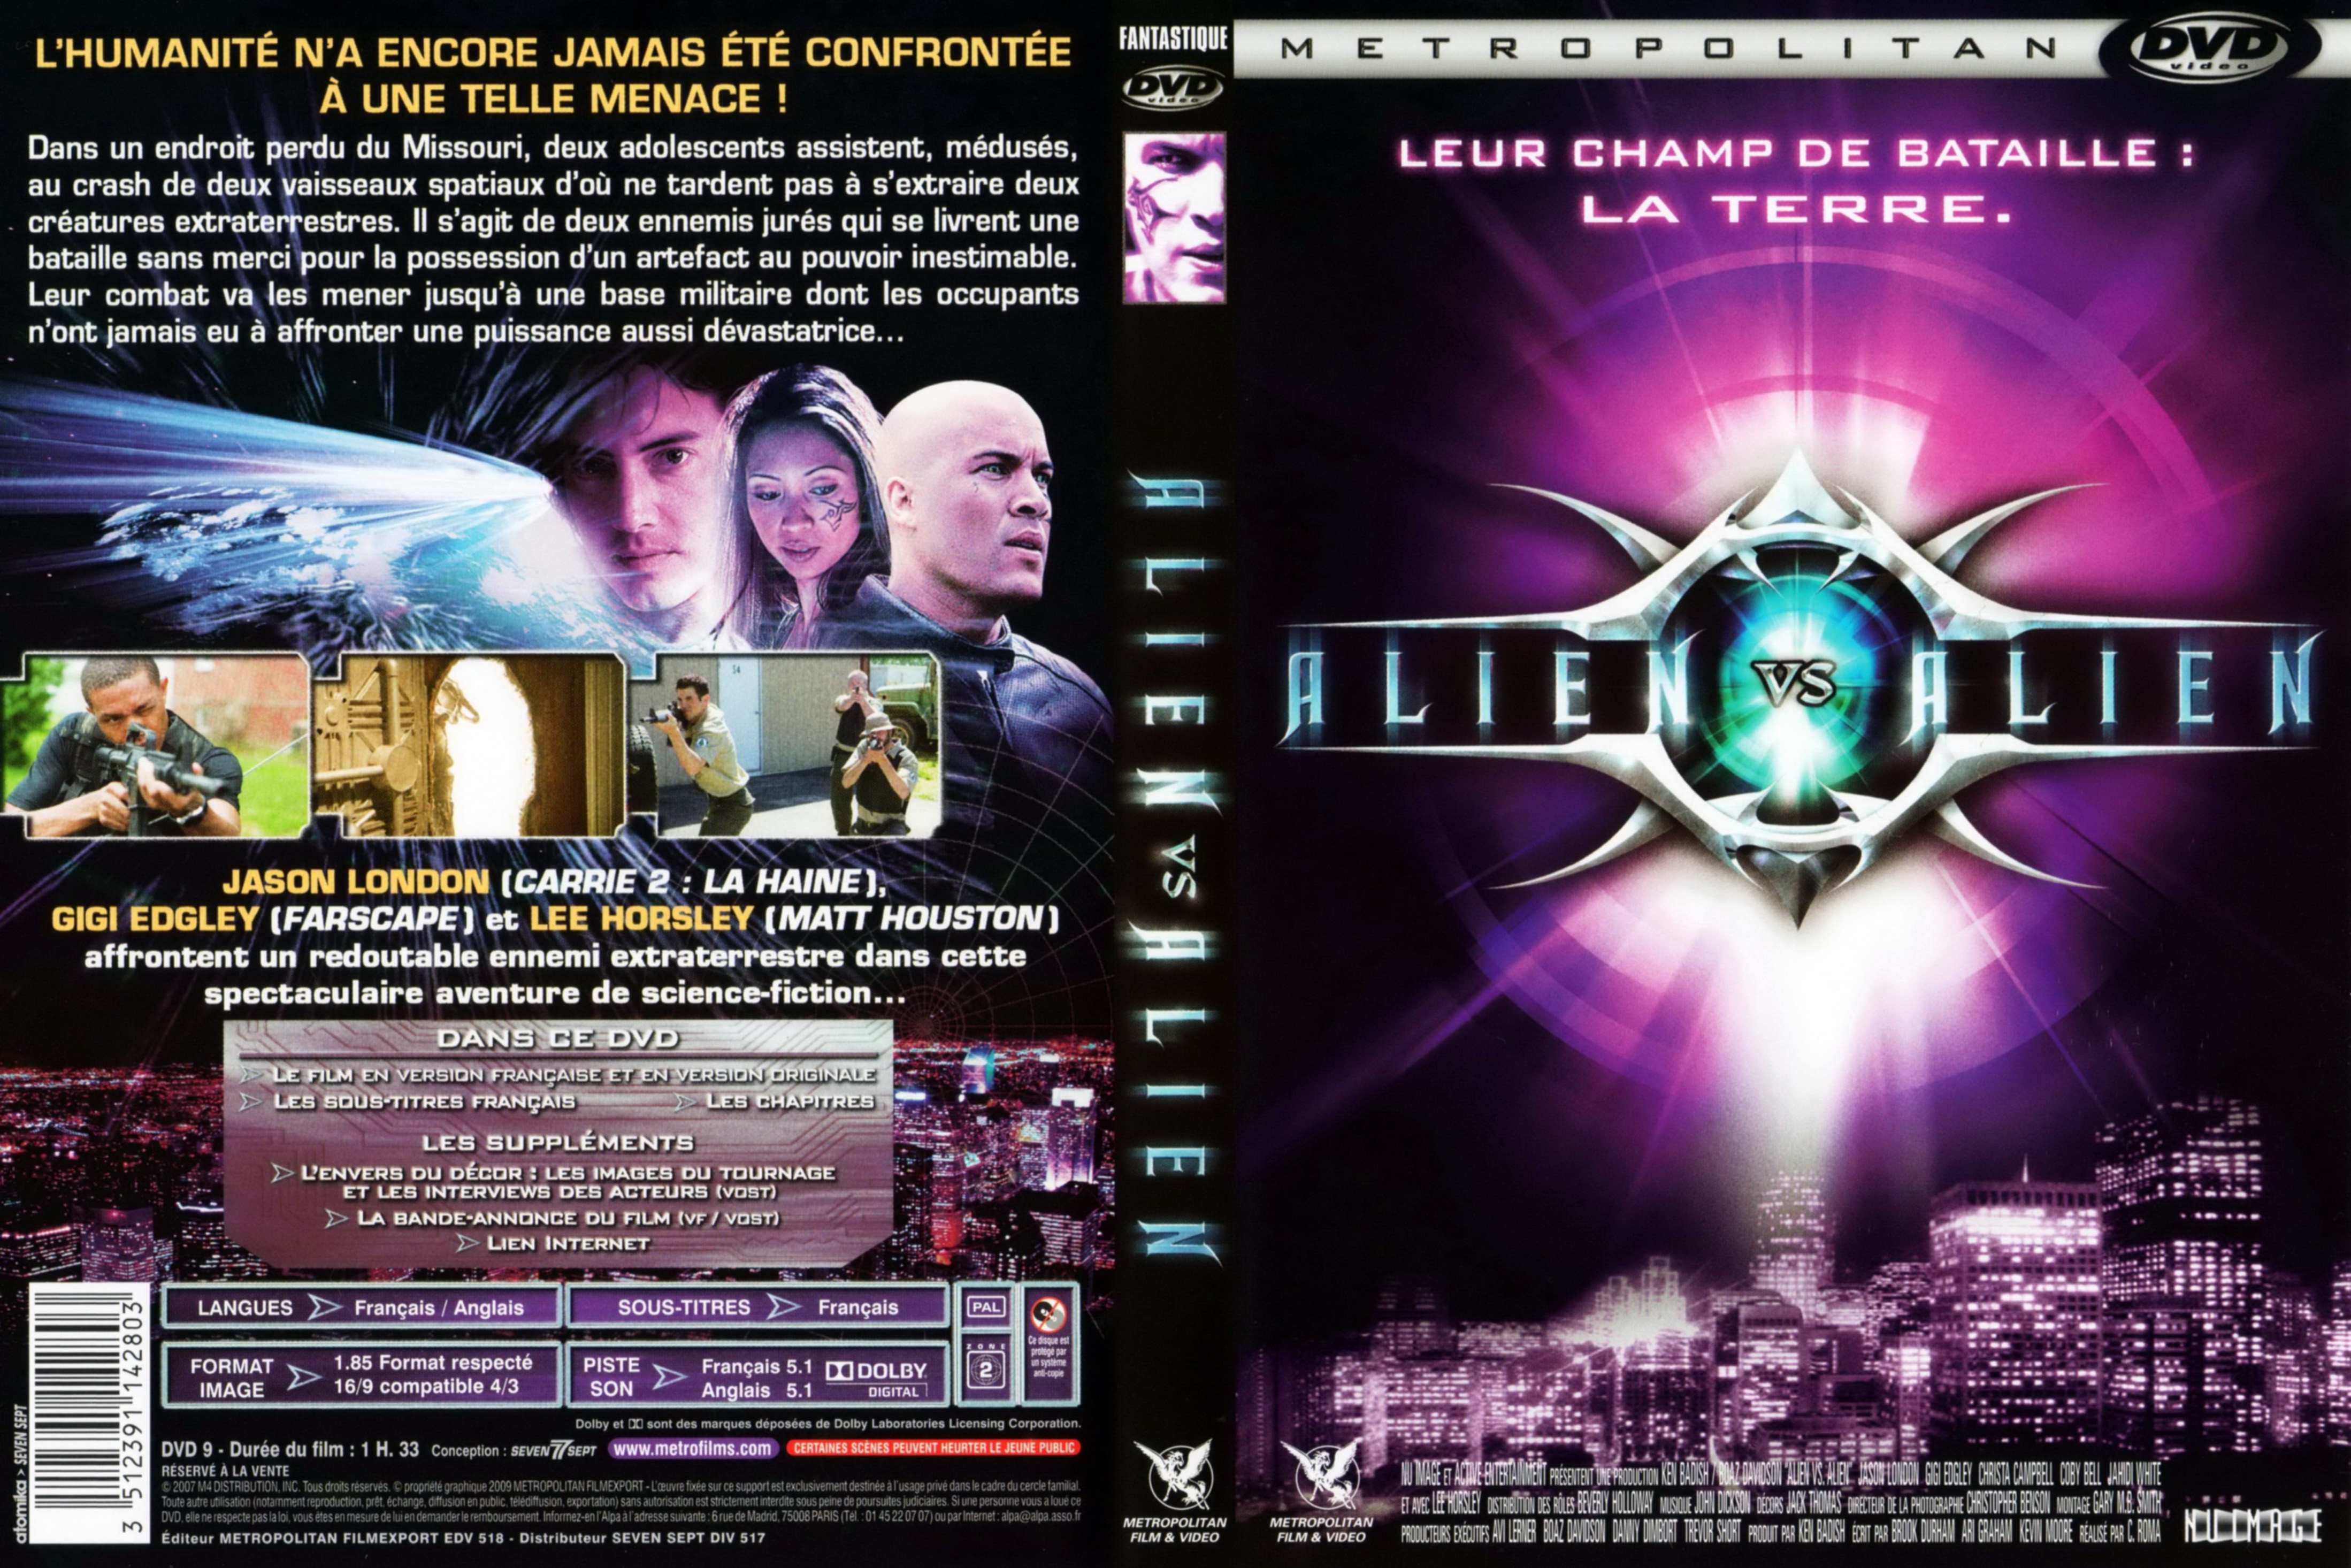 Jaquette DVD Alien vs alien